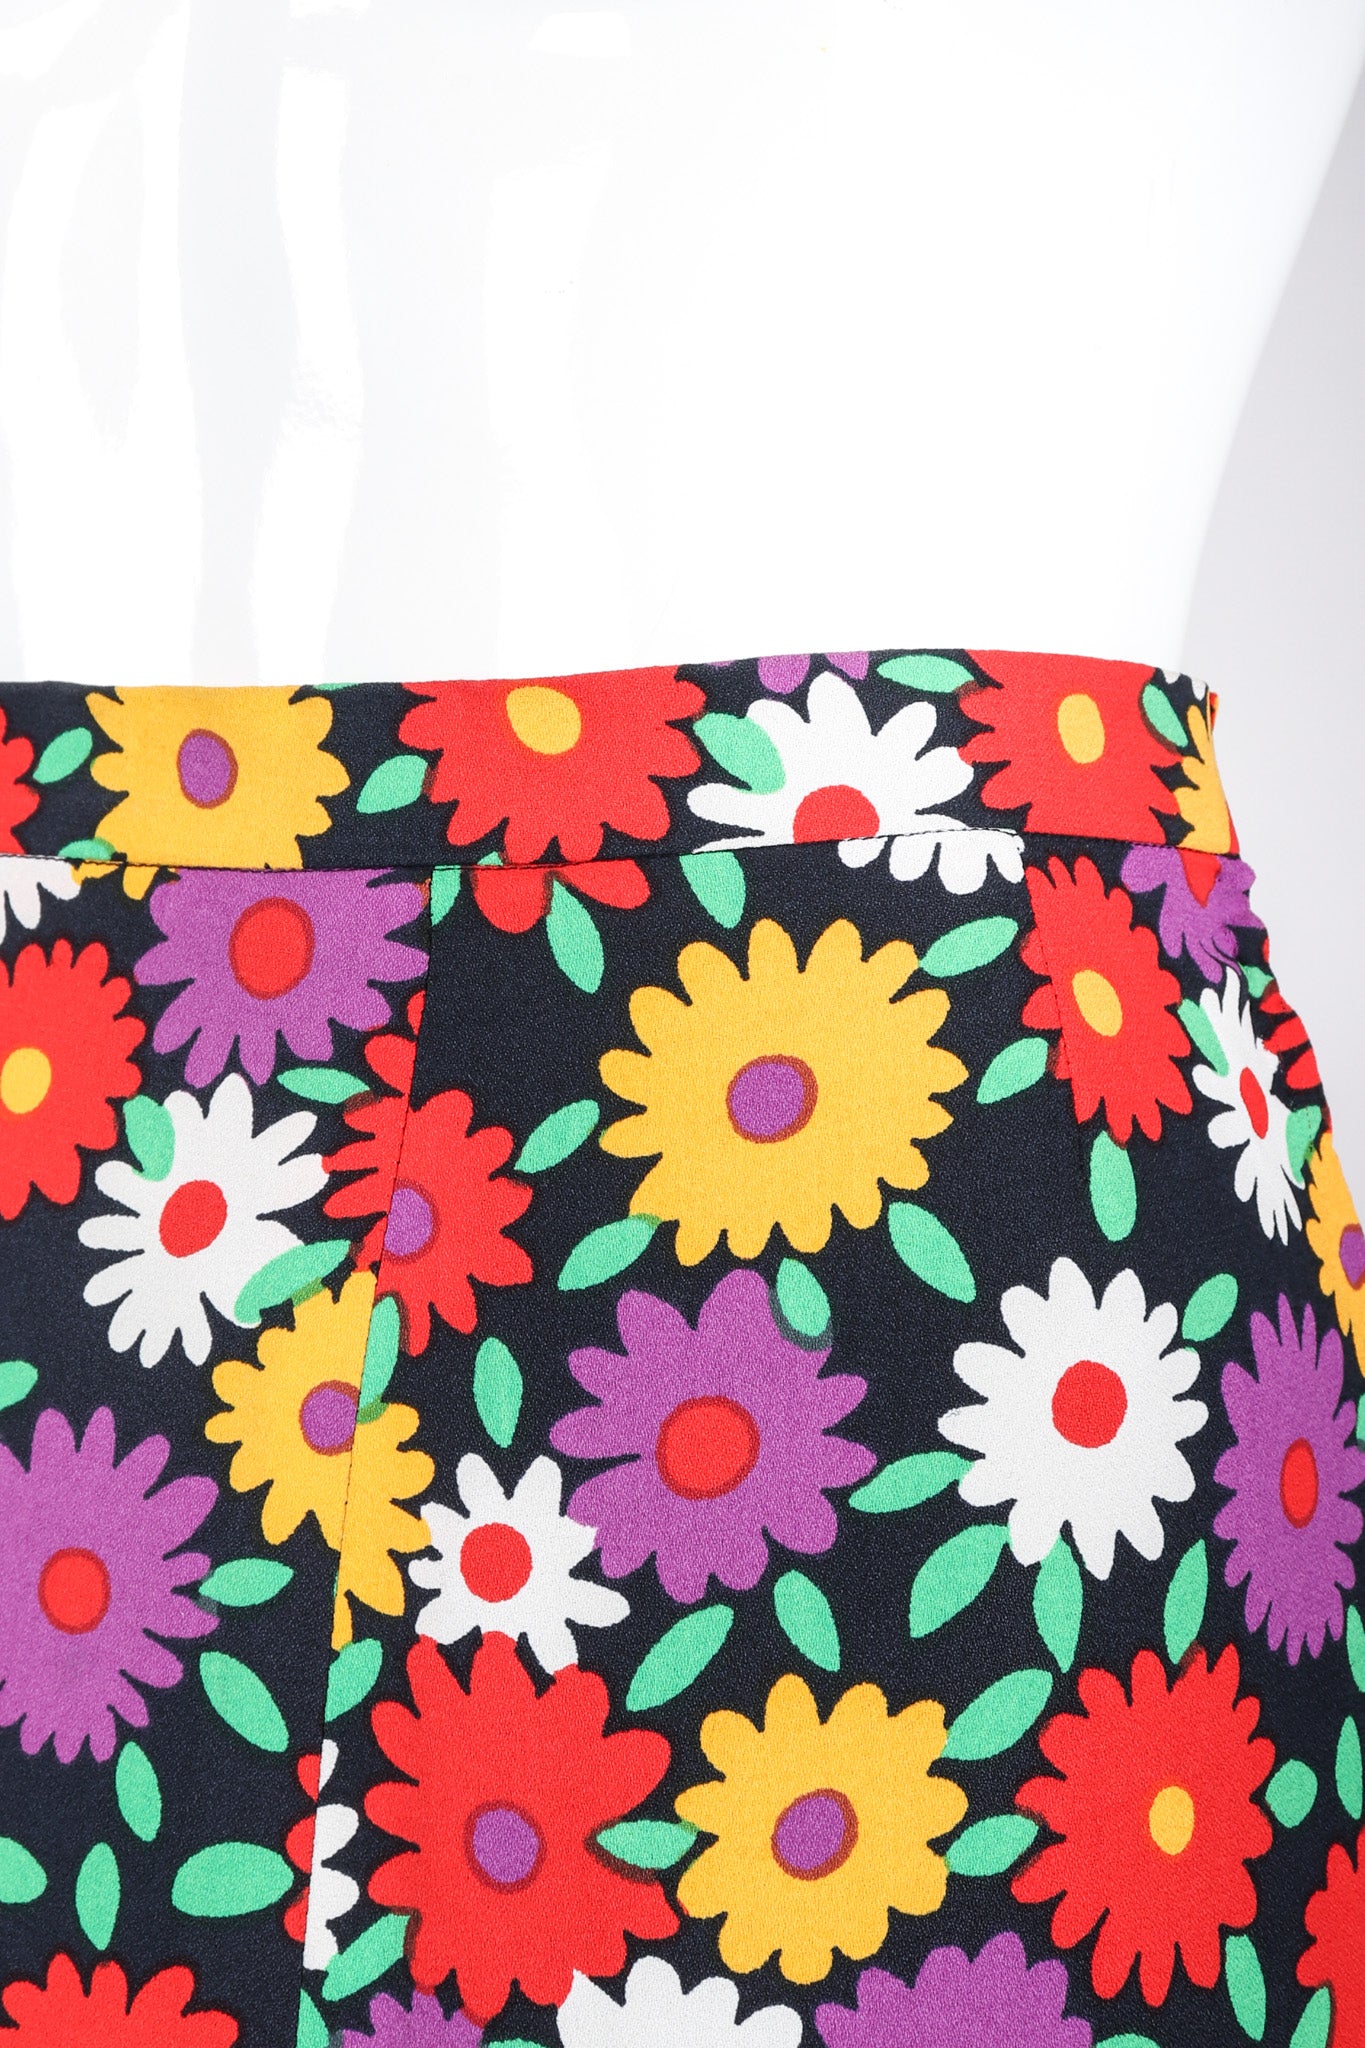 Recess Los Angeles Vintage YSL Yves Saint Laurent Rive Gauche Hippie Floral Print Skirt